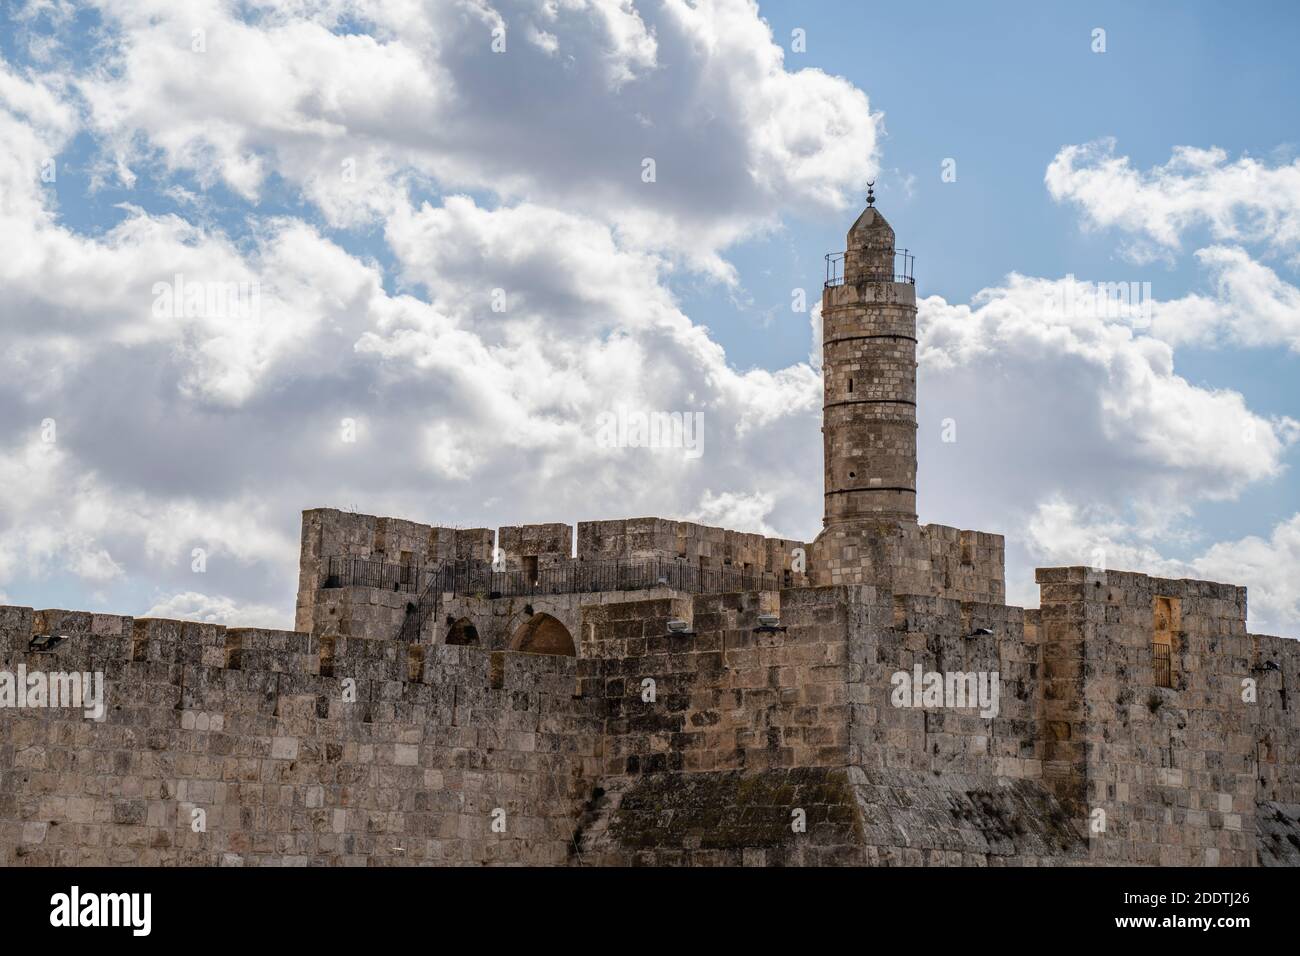 Jerusalén, Israel - 21 de noviembre de 2020: La torre de David en los muros de la antigua Jerusalén, Israel, en un día parcialmente nublado. Foto de stock